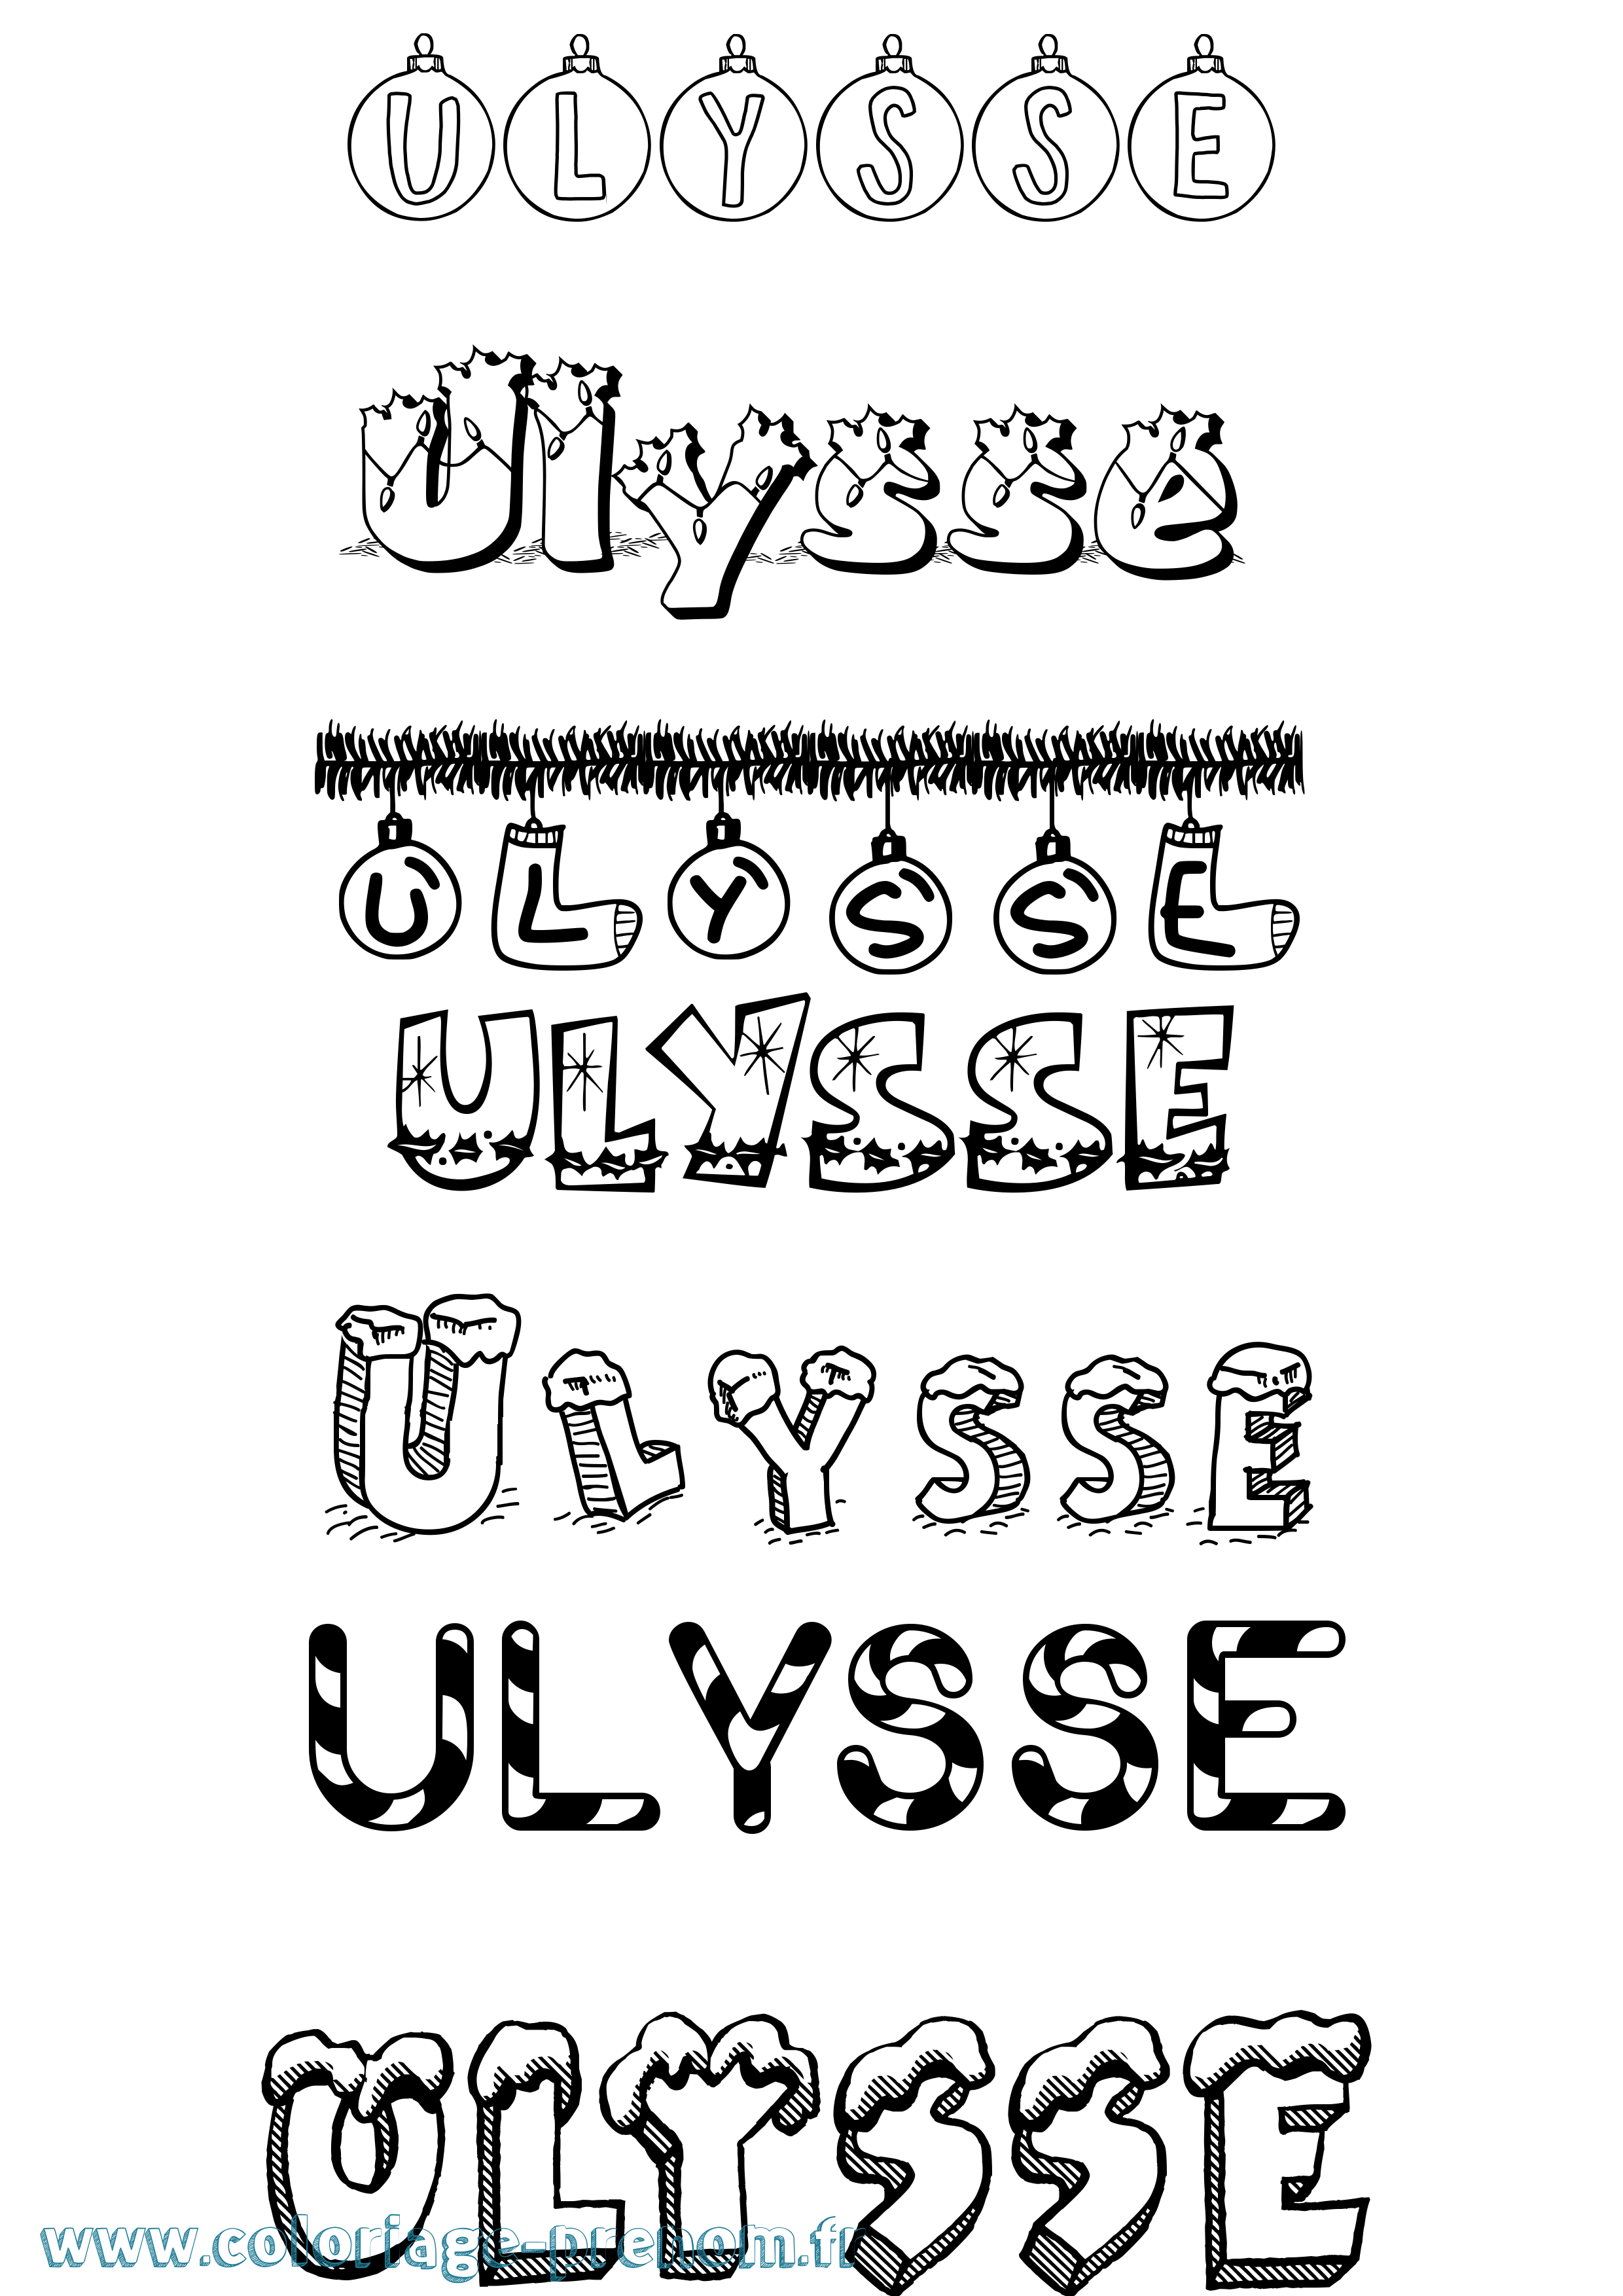 Coloriage prénom Ulysse